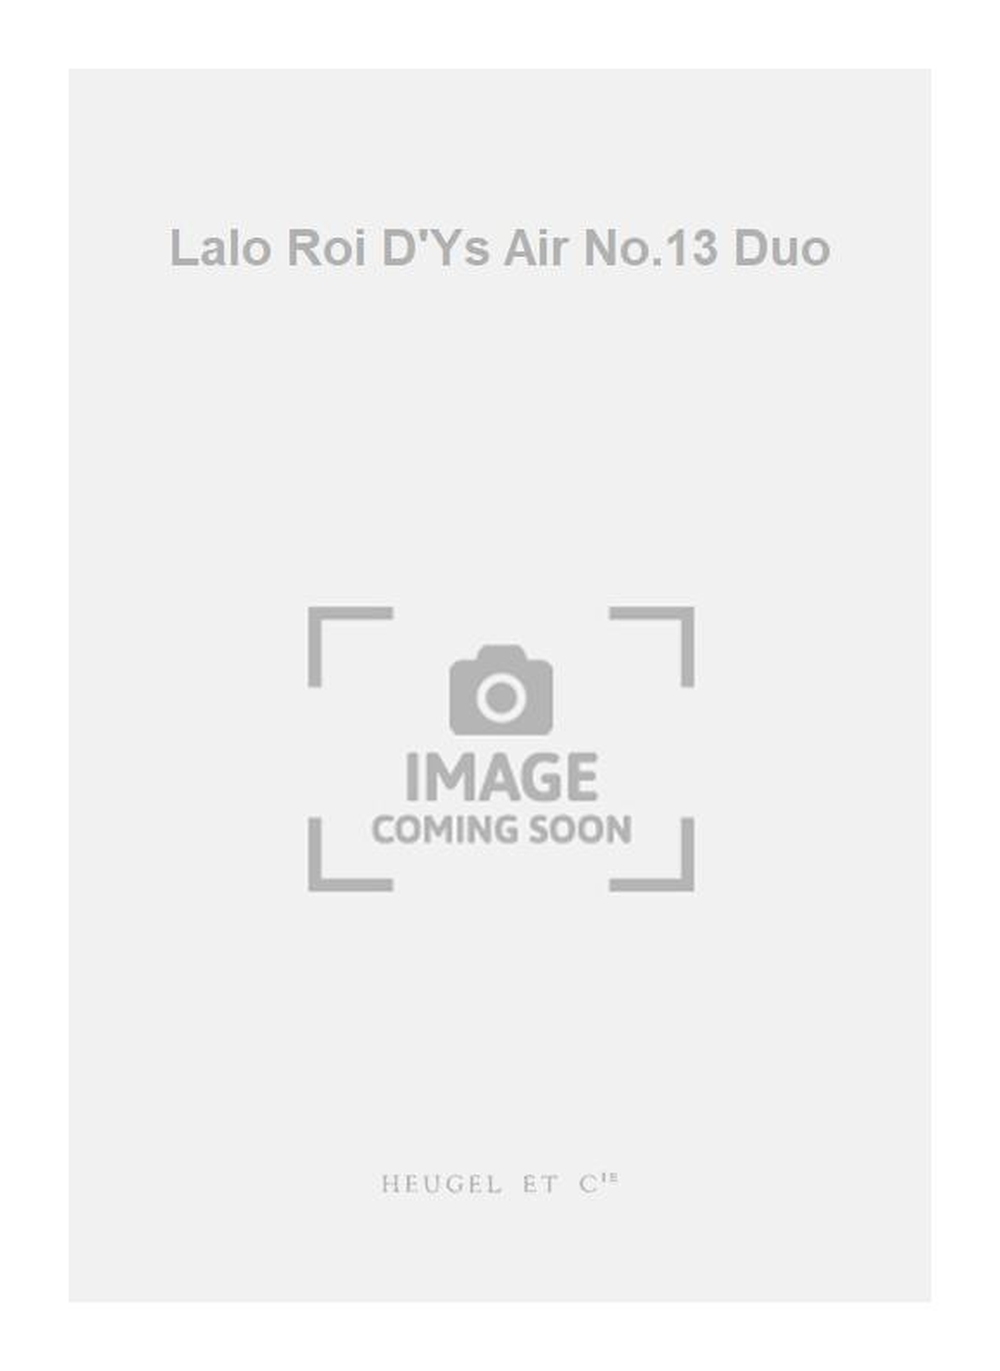 Edouard Lalo: Lalo Roi D'Ys Air No.13 Duo